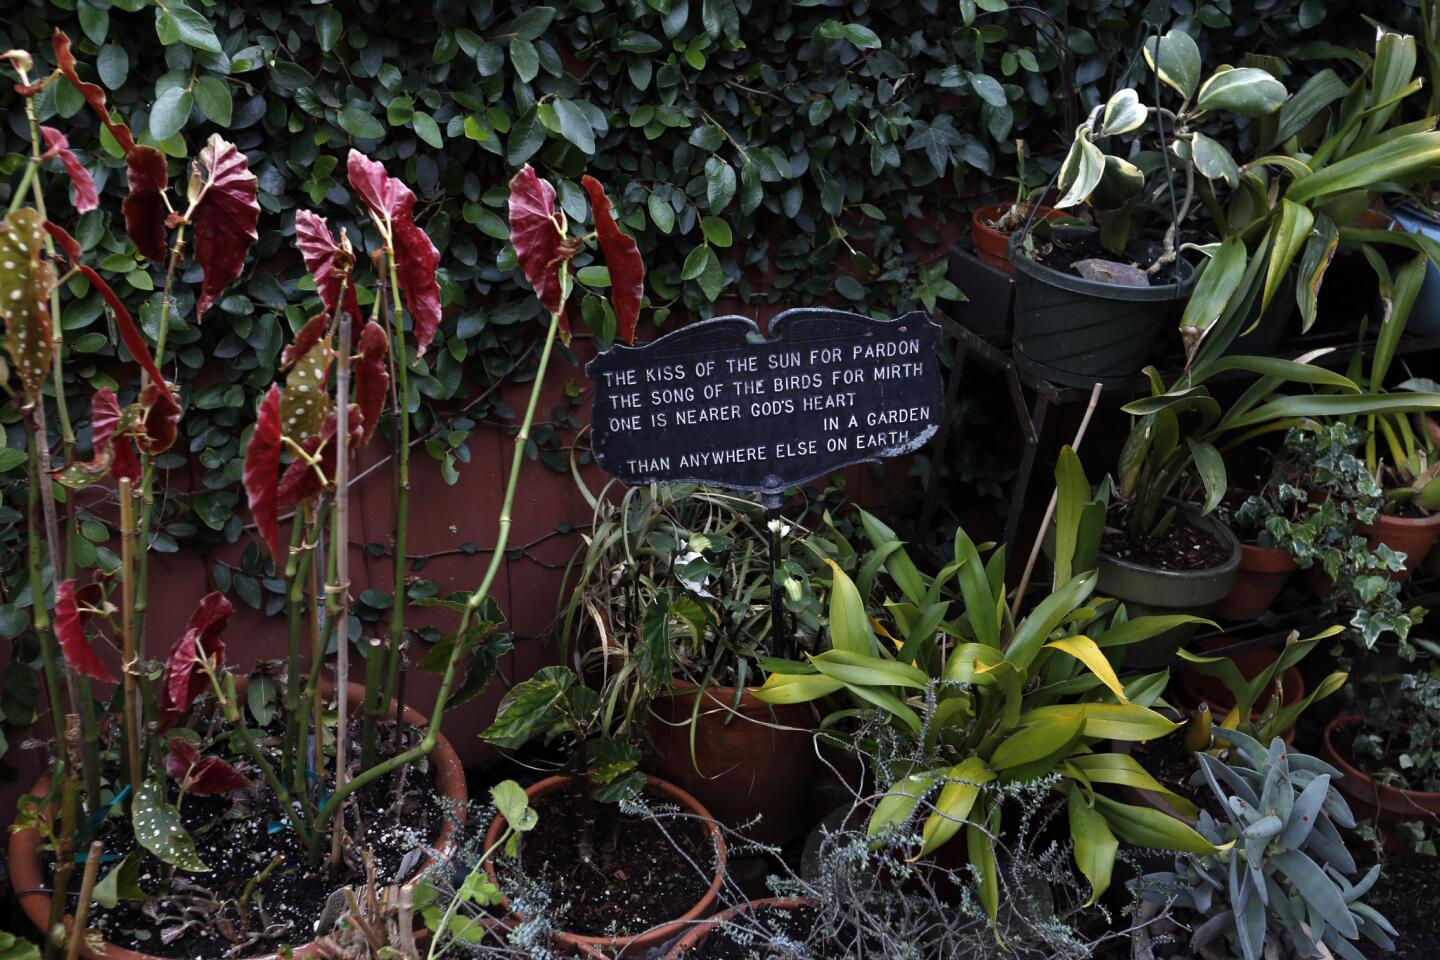 Julie Newmar's garden